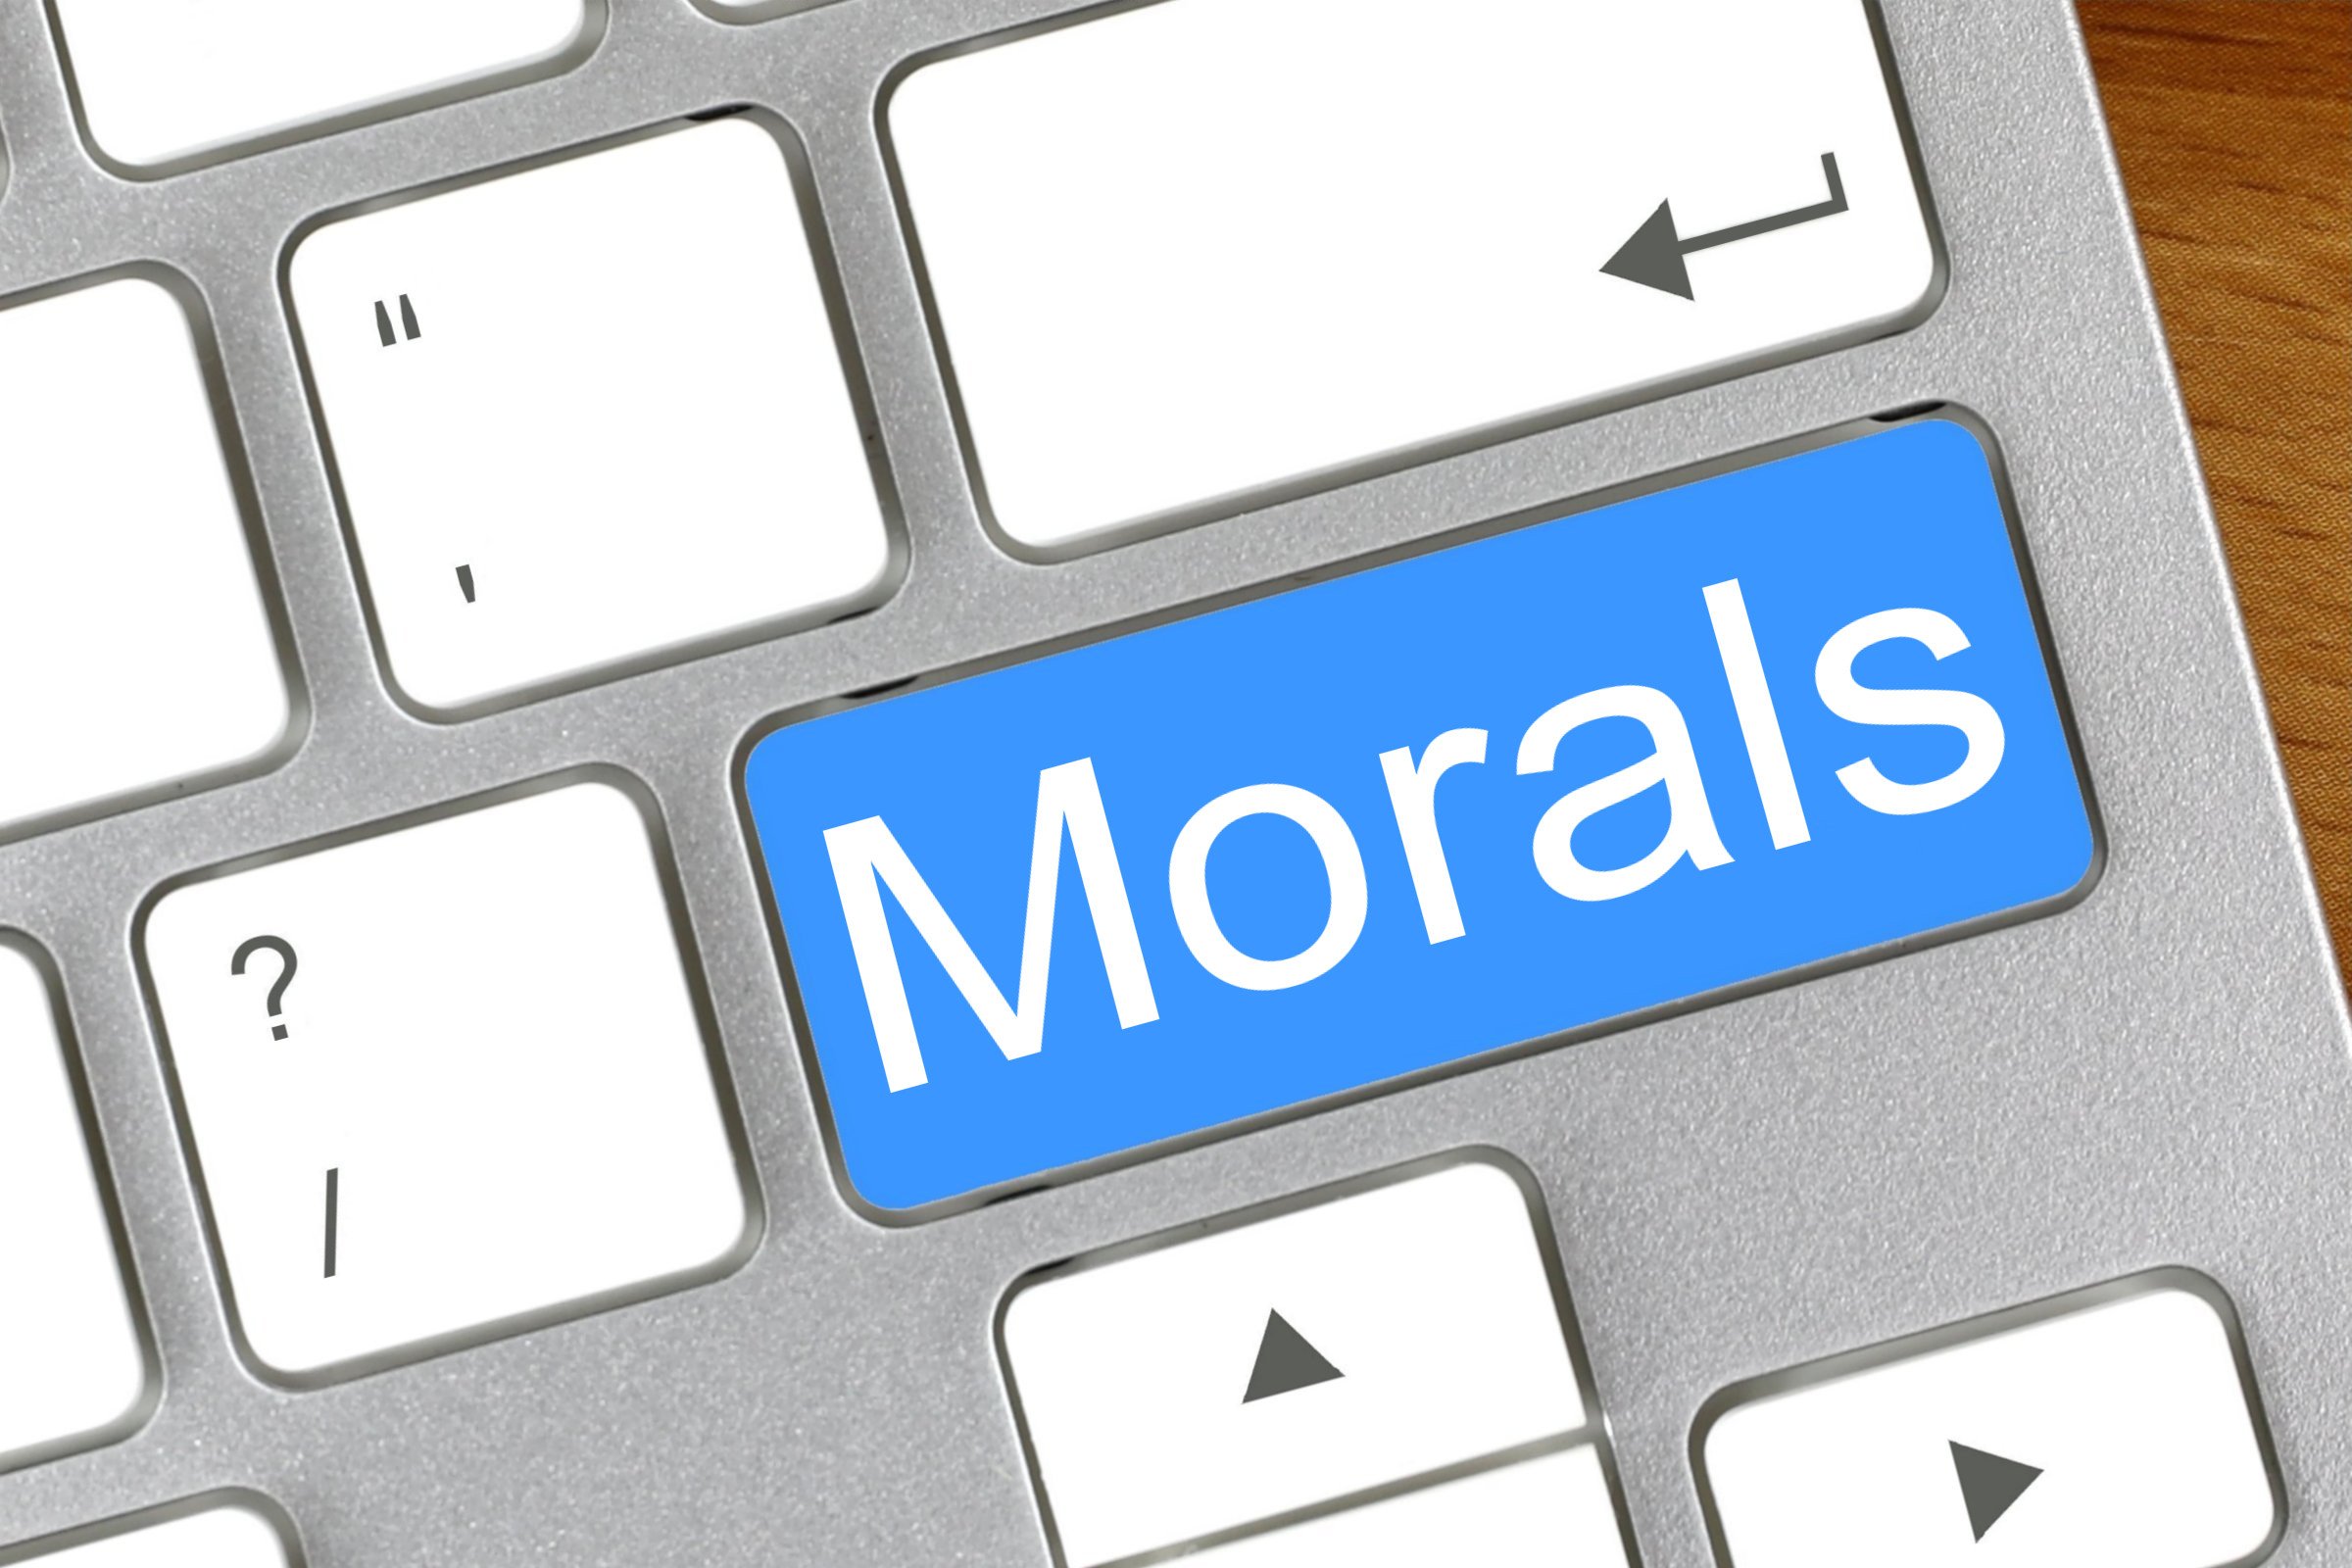 morals